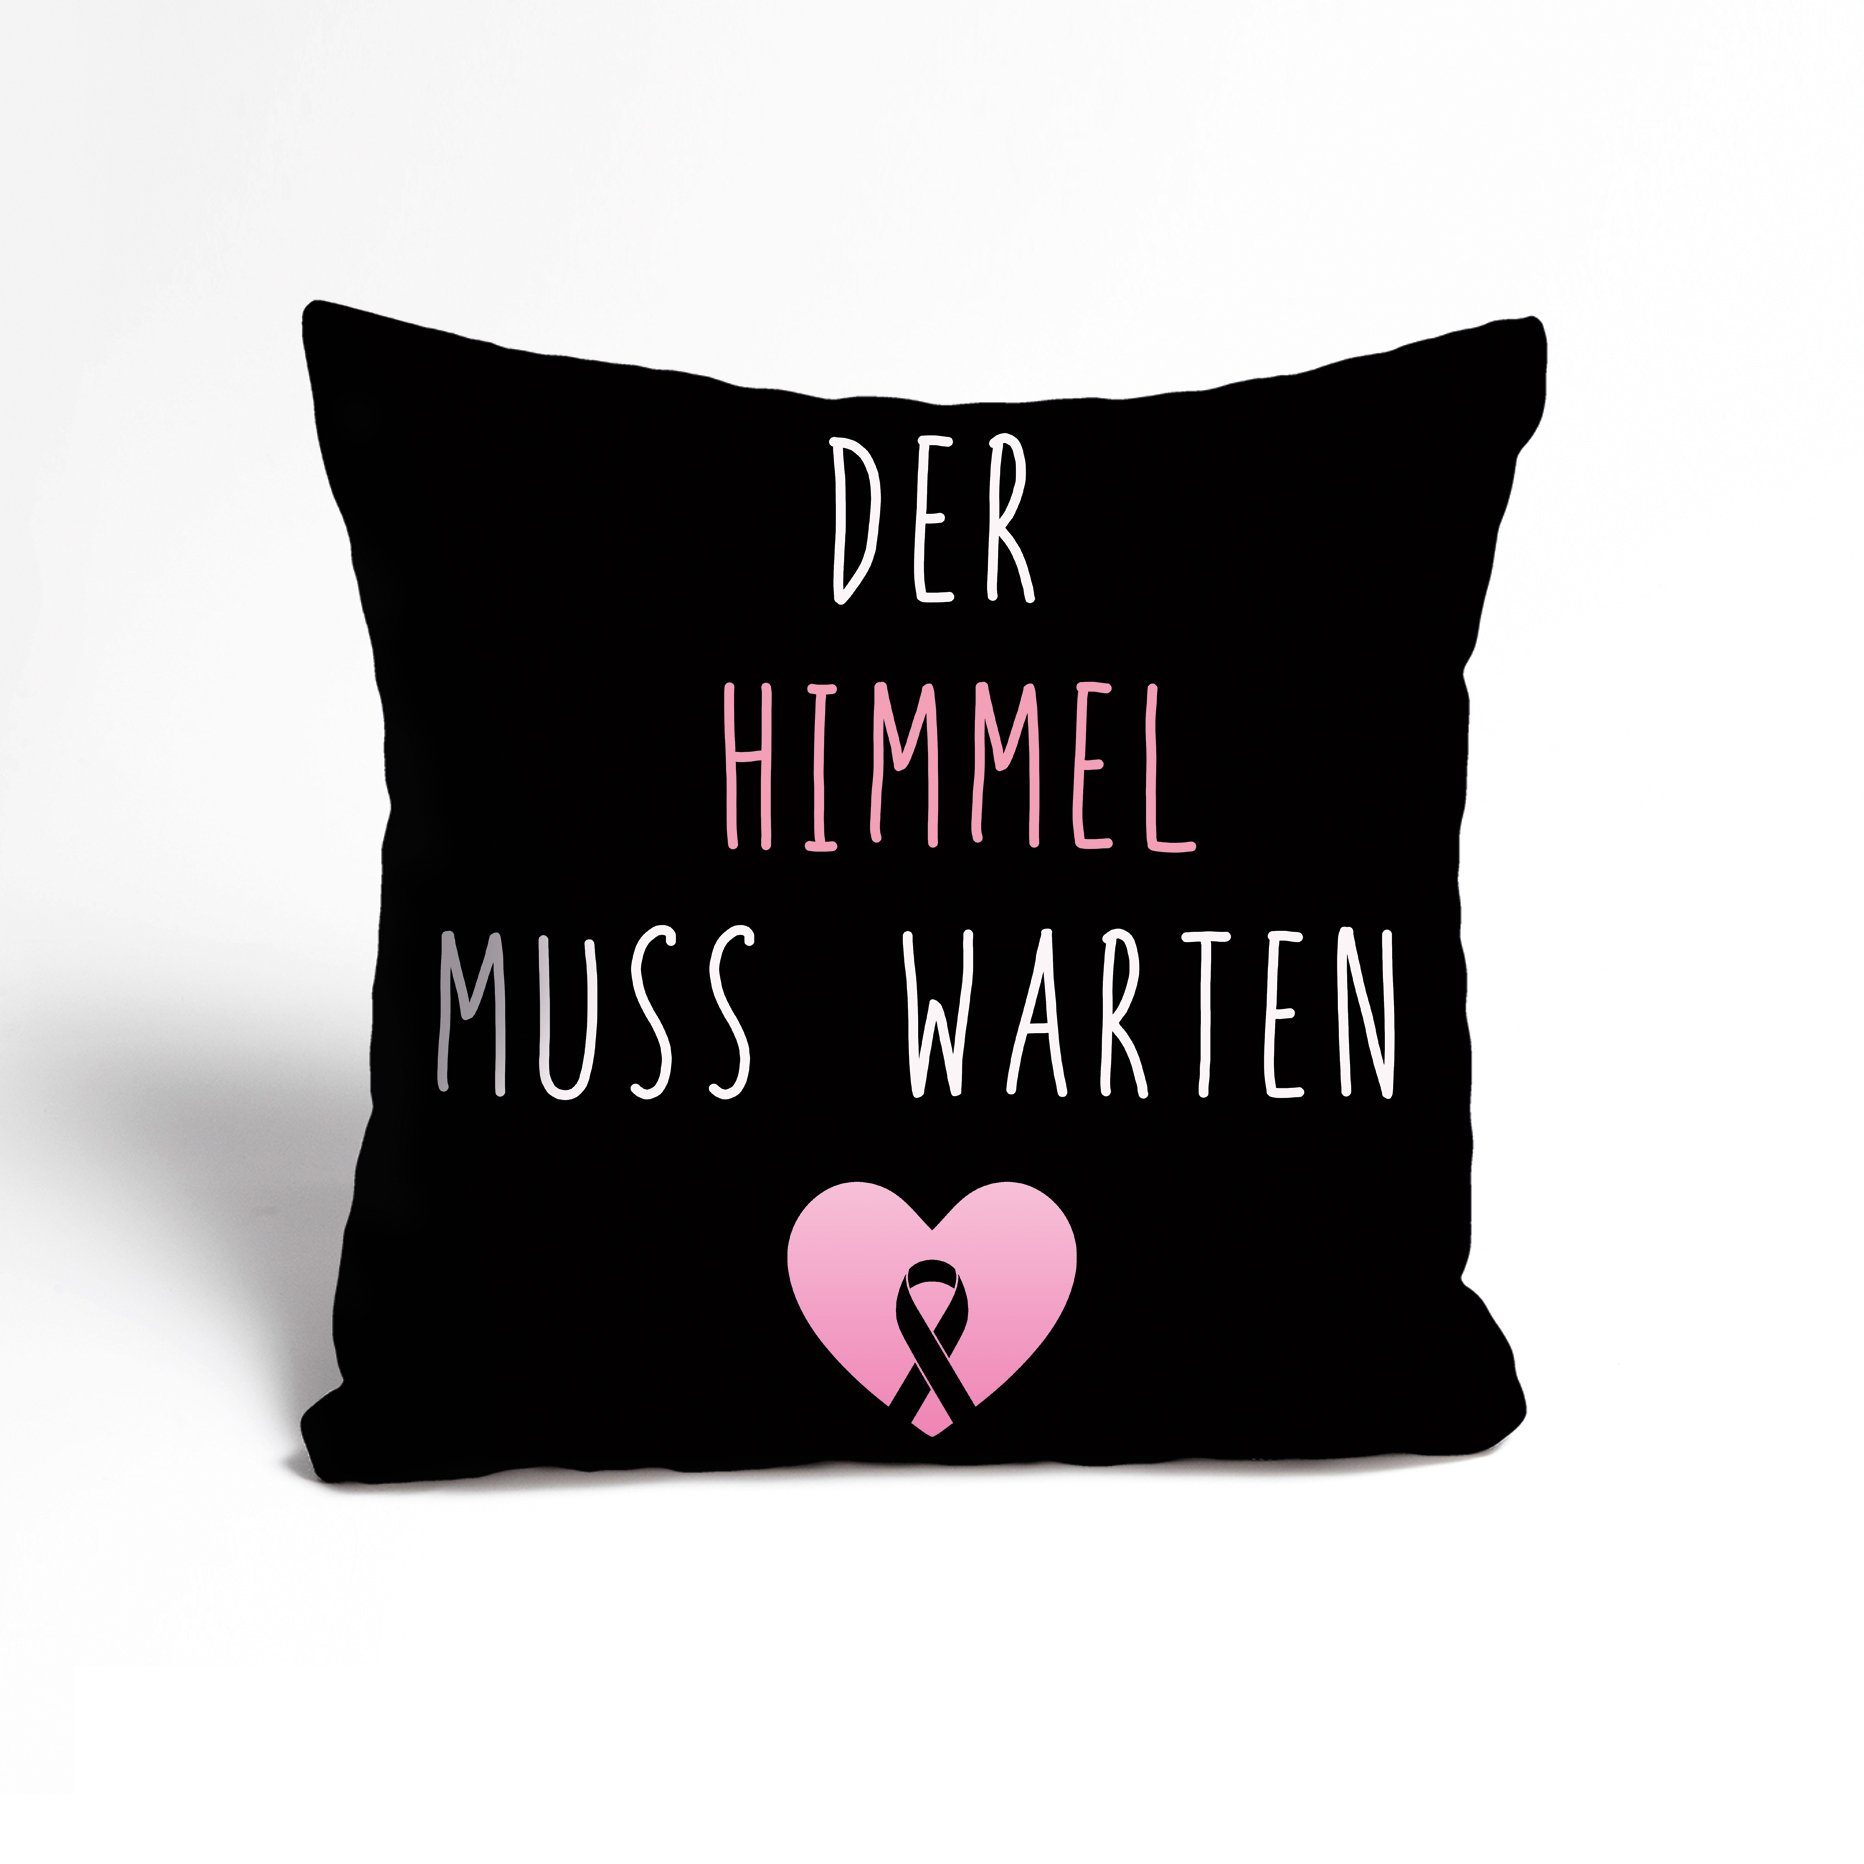 Kissenbezug Der Himmel muss warten - think pink club - Cancer - Pinktober, queence (1 Stück), Kissenhülle - Zierkissenbezug - 40x40 cm Schwarz/Pink